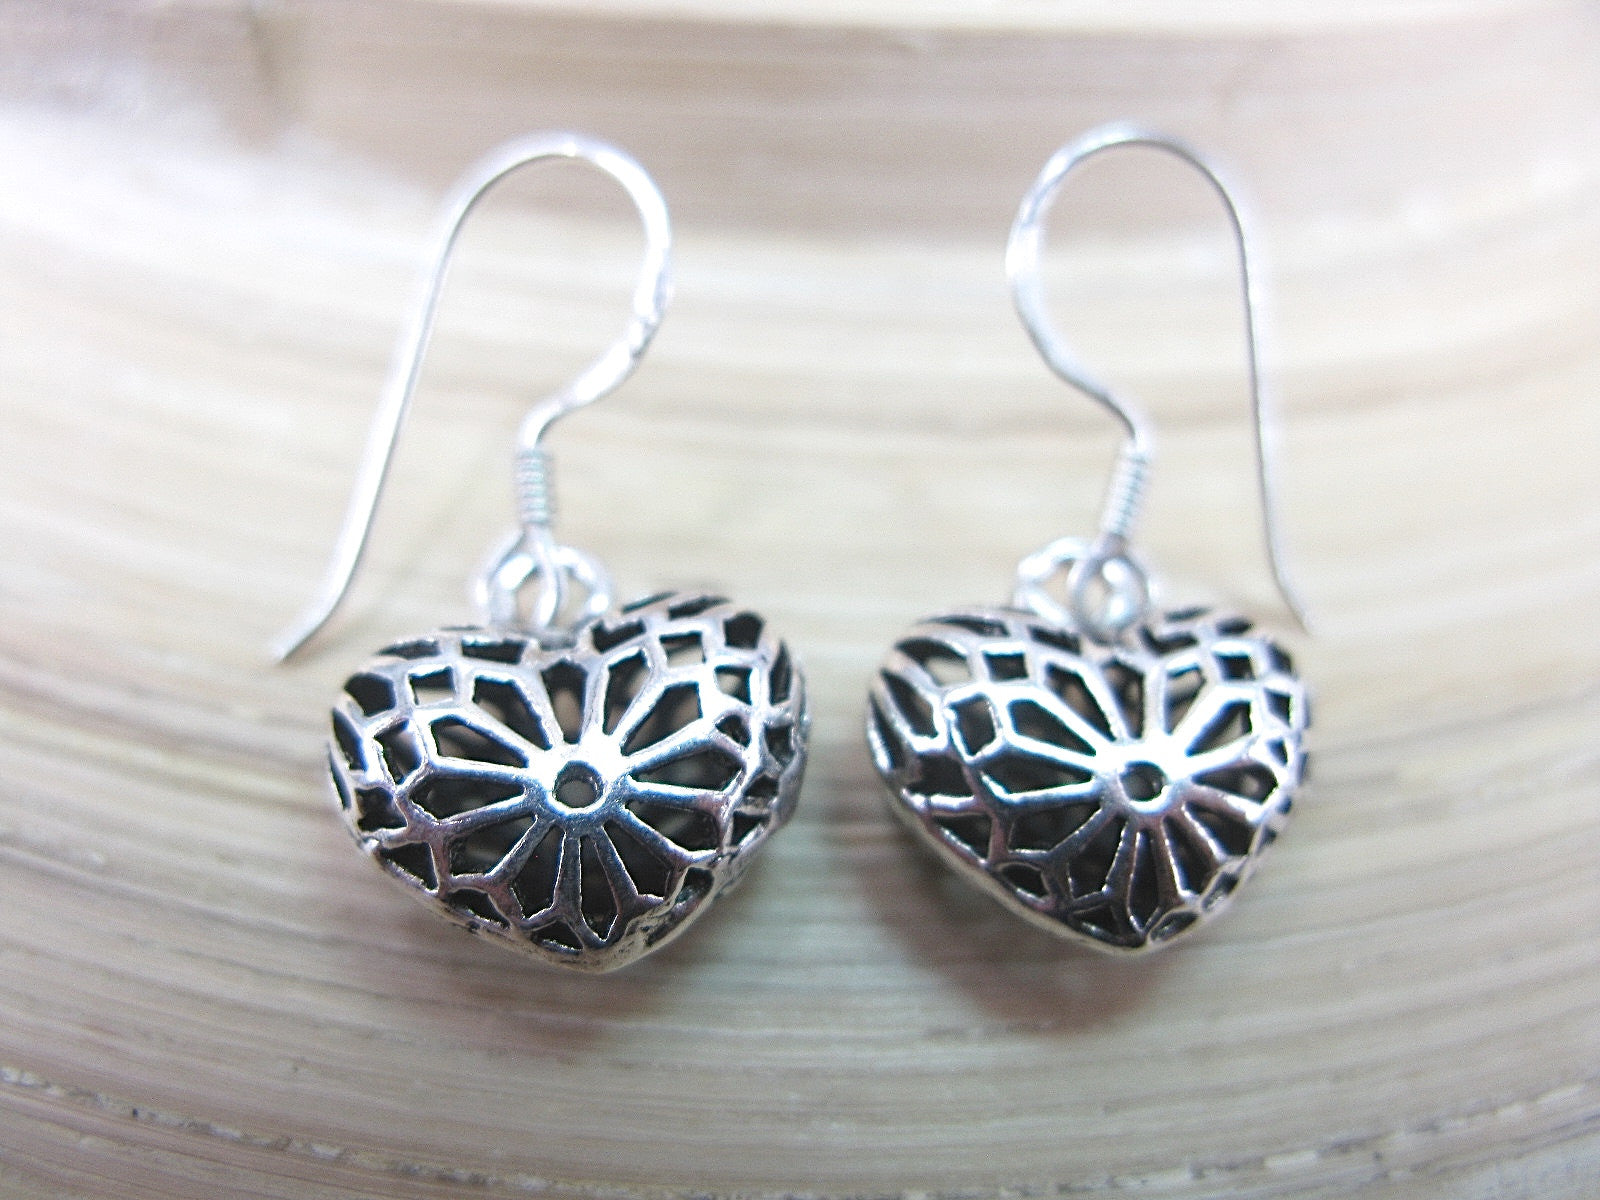 Filigree Lace Heart Earrings in 925 Sterling Silver Earrings - Faith Owl